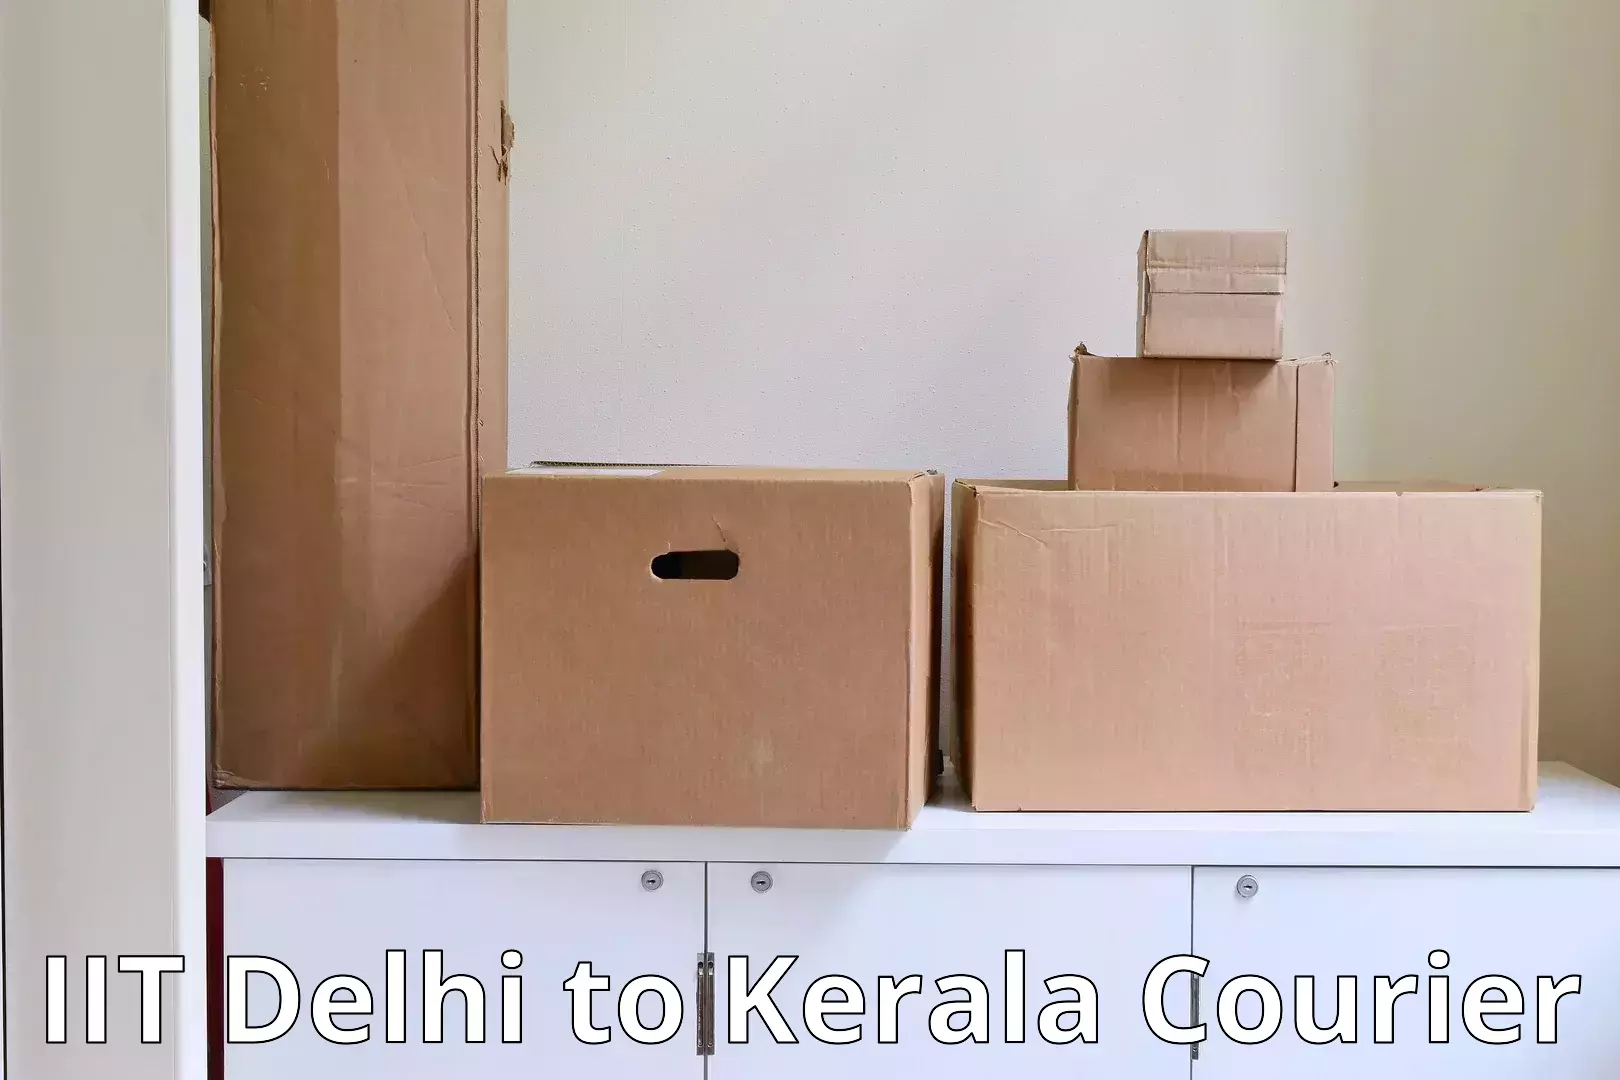 Flexible moving solutions in IIT Delhi to Idukki